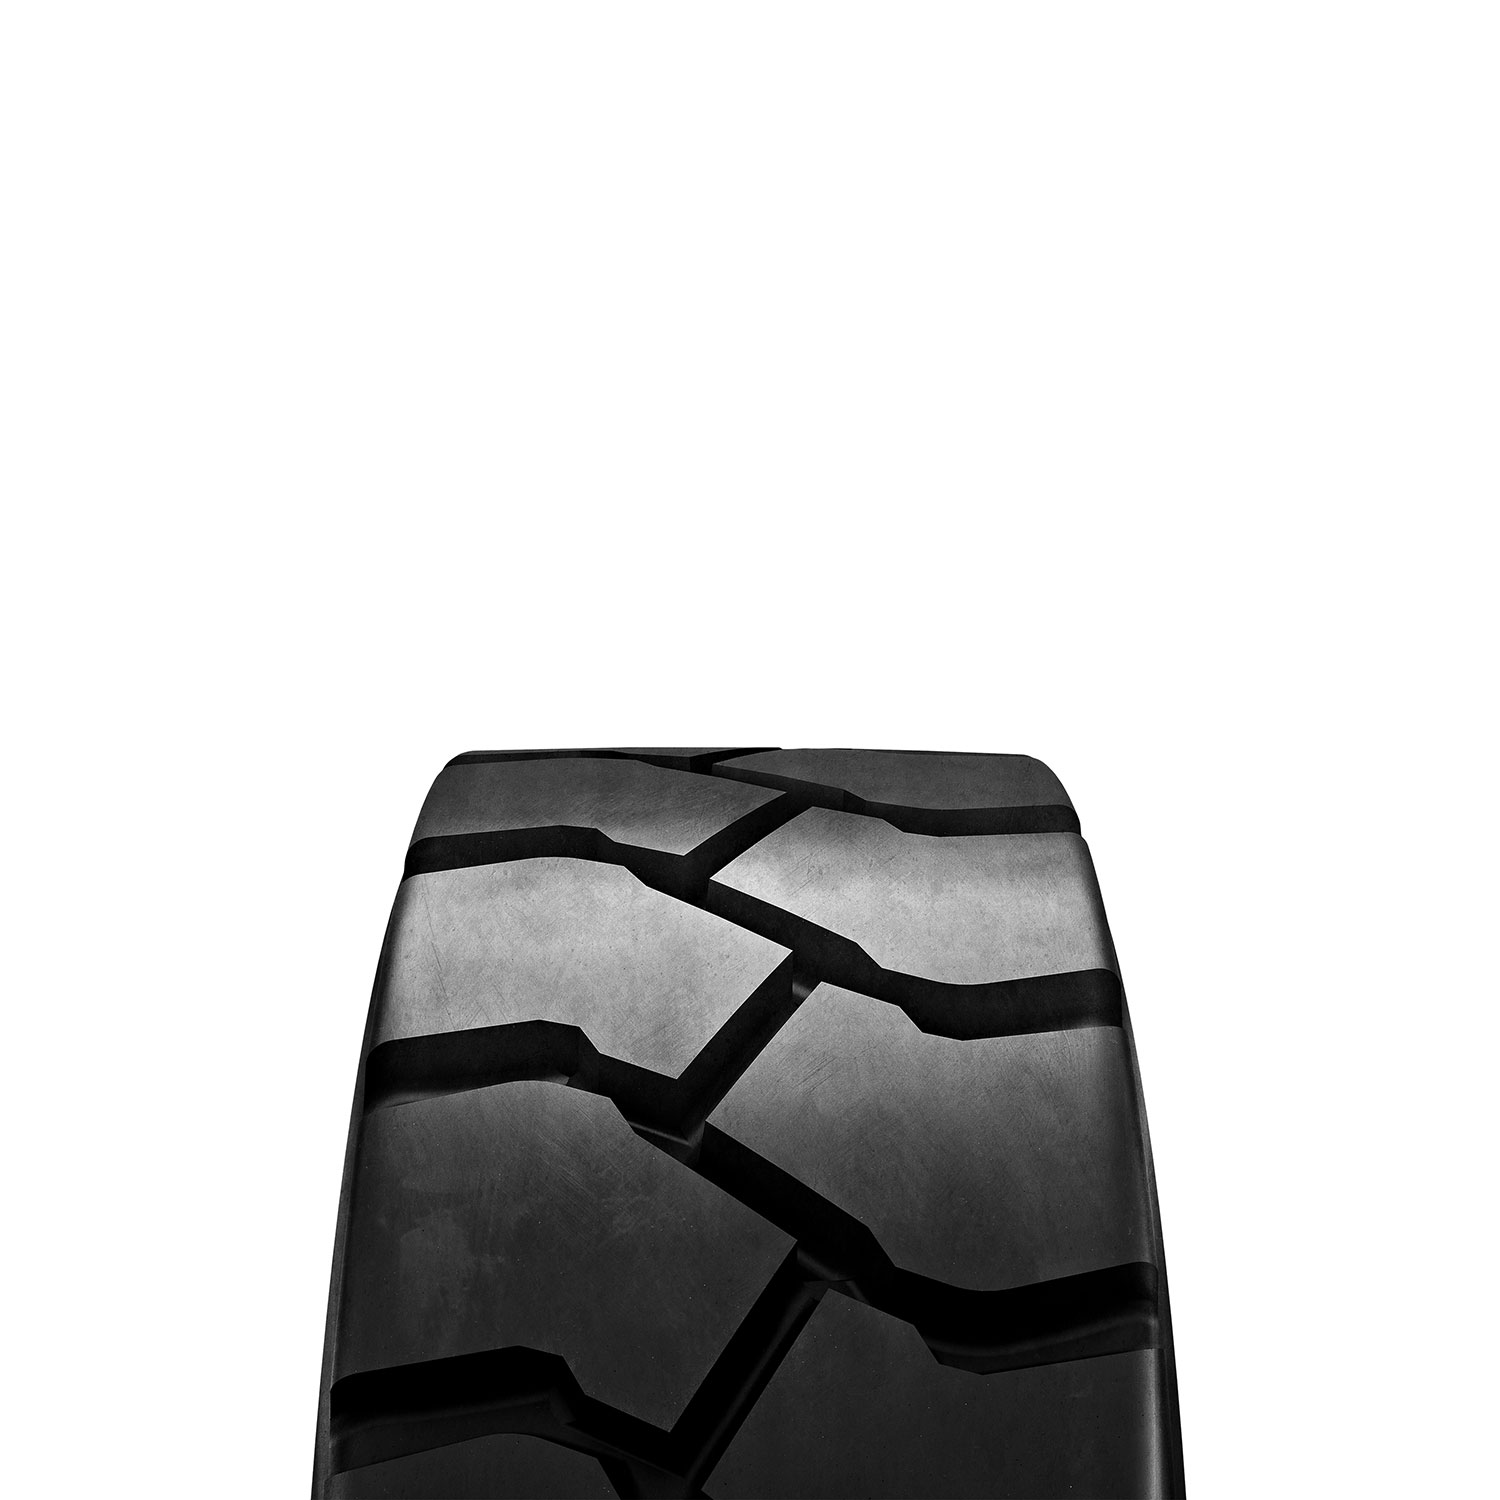 Gomme Nuove Solideal 18/7 R8 16PR HALT HAULER BLACK pneumatici nuovi Estivo